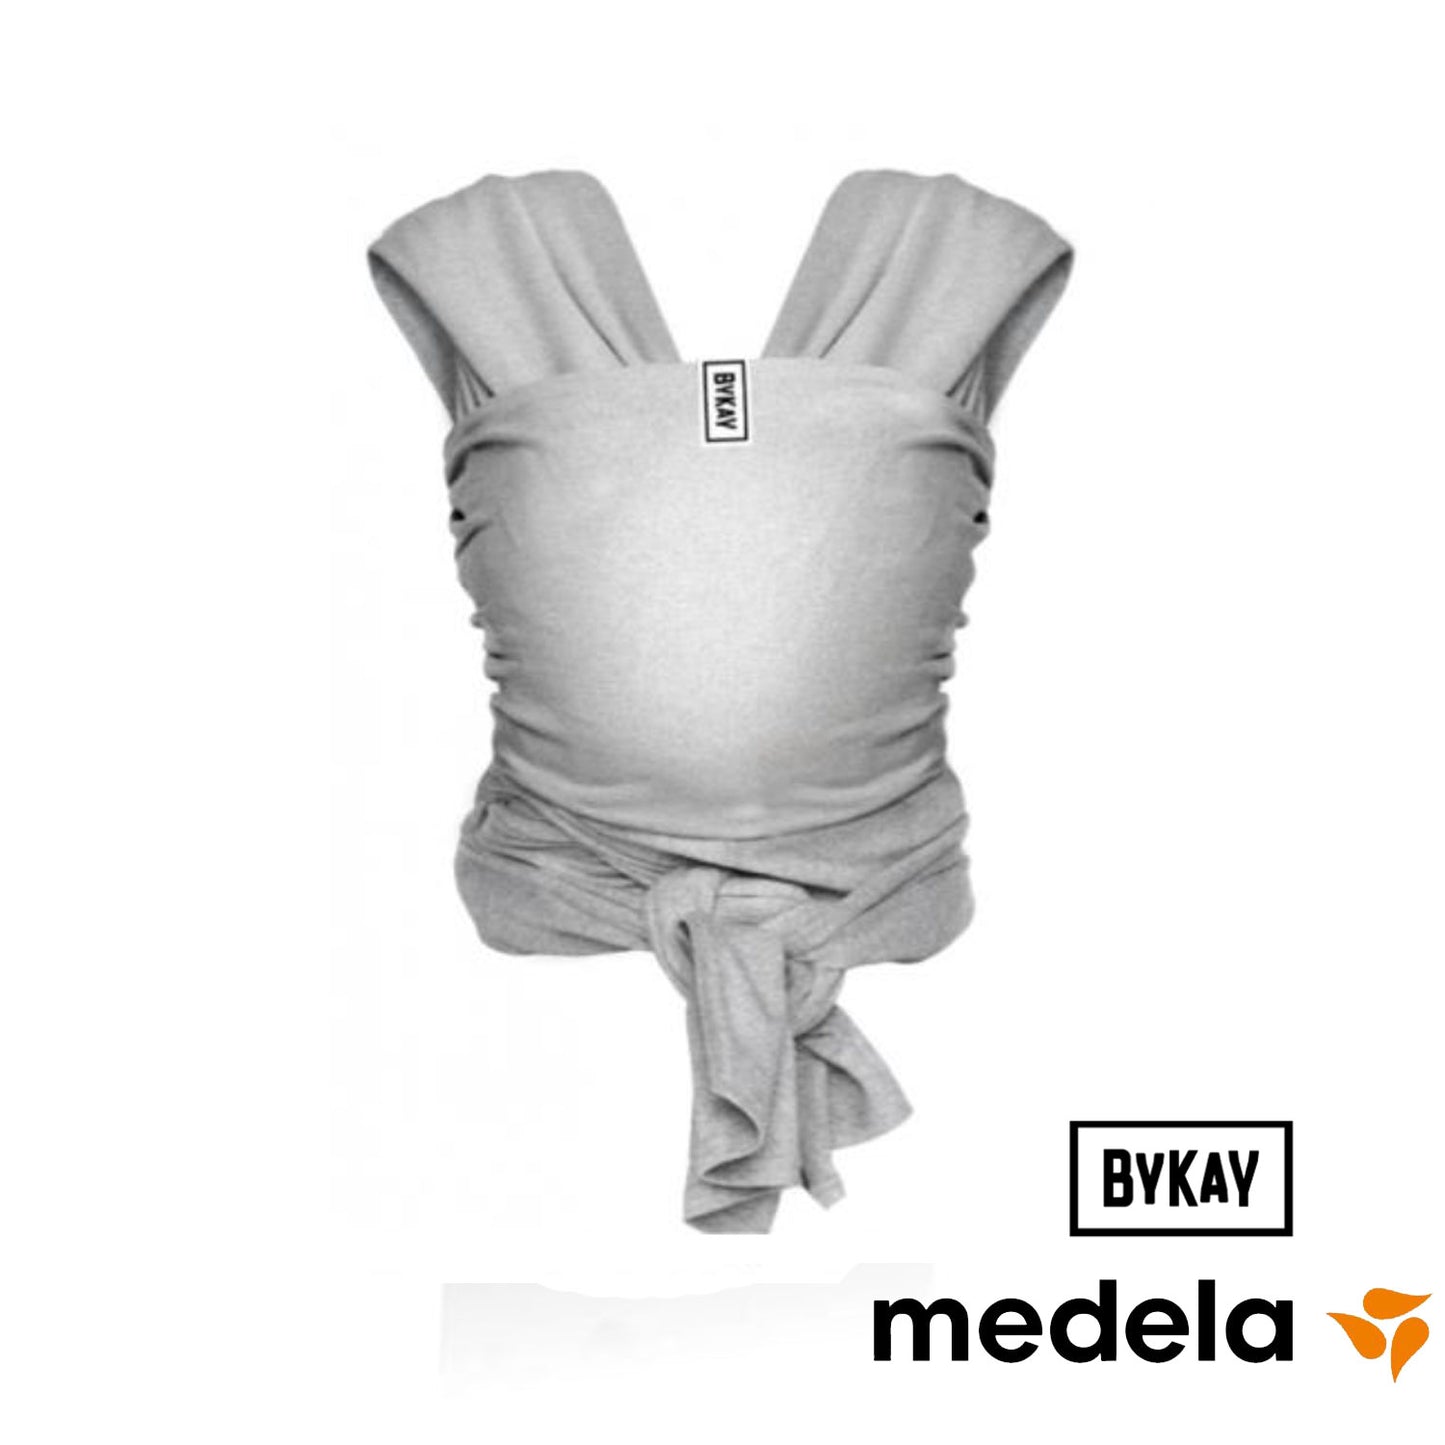 Medela - Bykay Baby Carrier